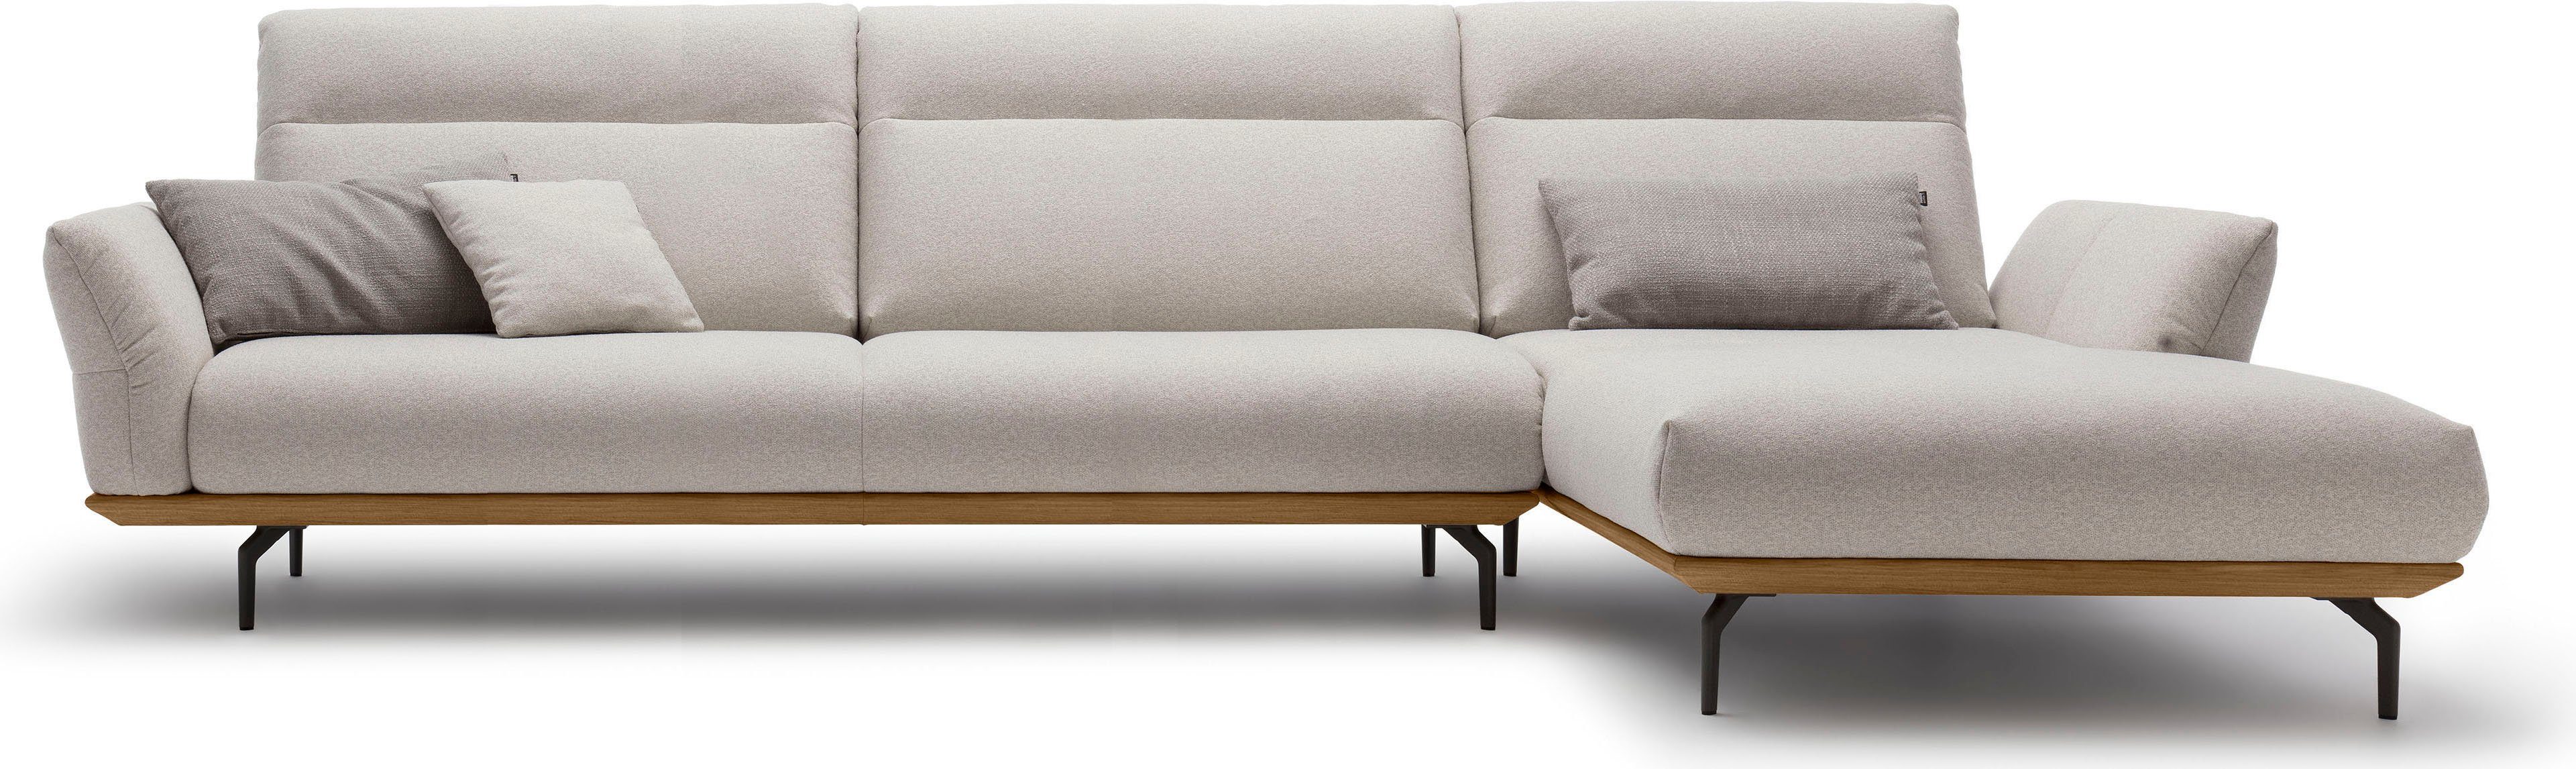 huelsta sofa hoekbank hs.460 sokkel in walnotenhout, onderstel in umbra grijs, breedte 338 cm grijs